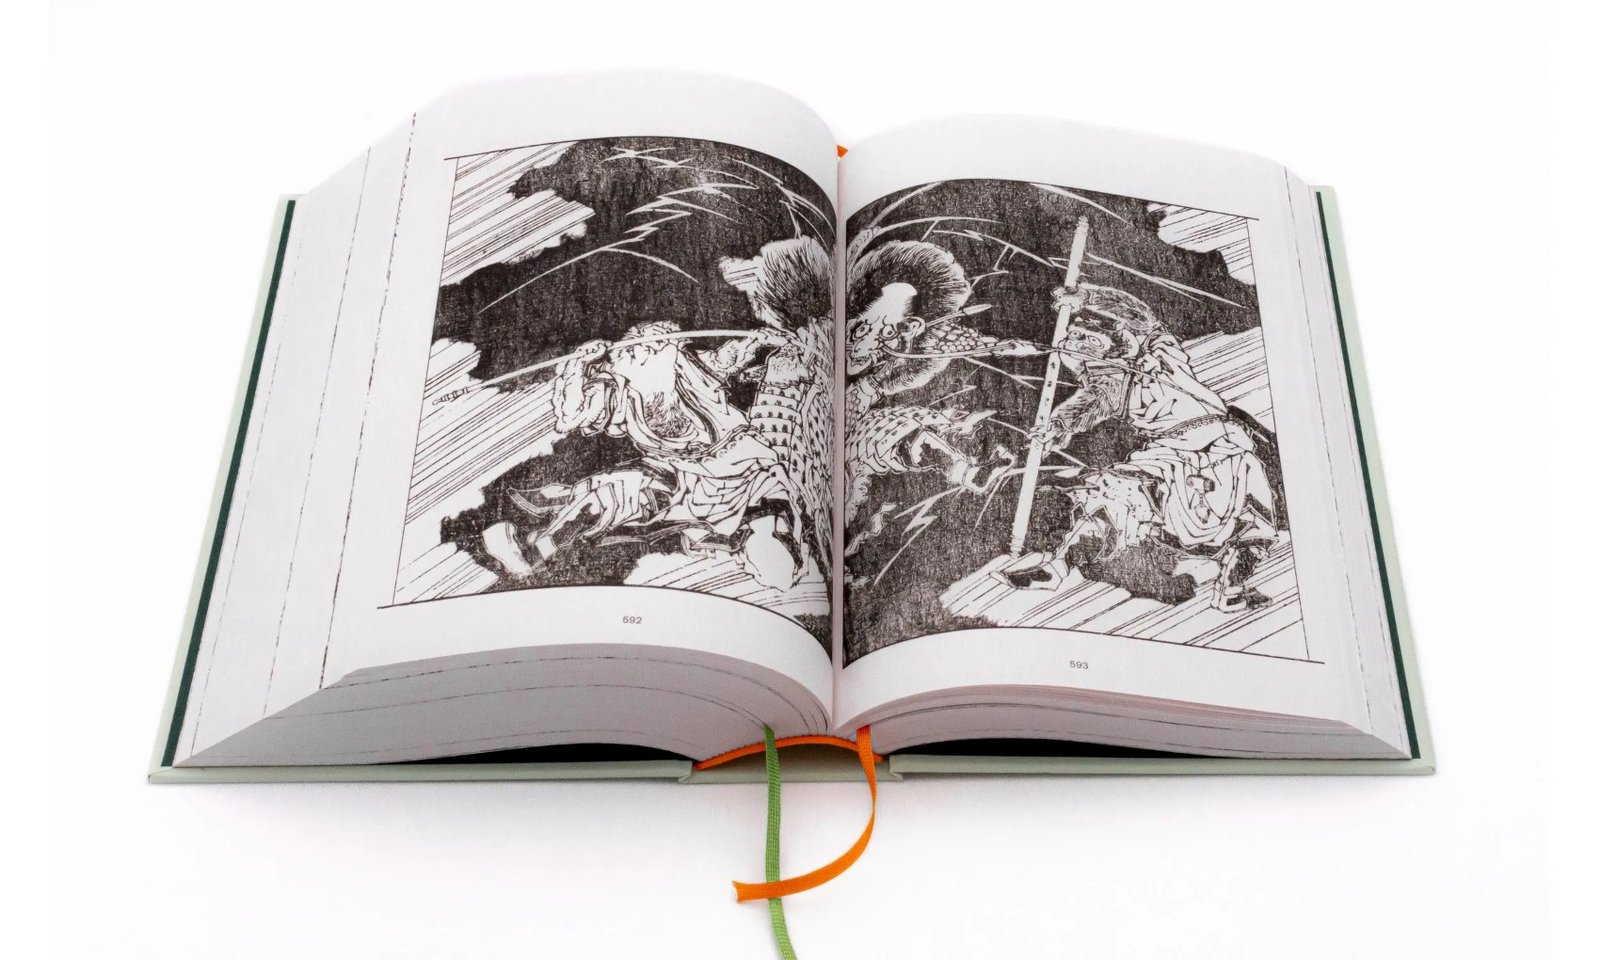 Les Éditions 2024 rééditent "Pérégrination vers l'Ouest" de Wu Cheng'en, une collection d'estampes pionnière qui a influencé le manga moderne